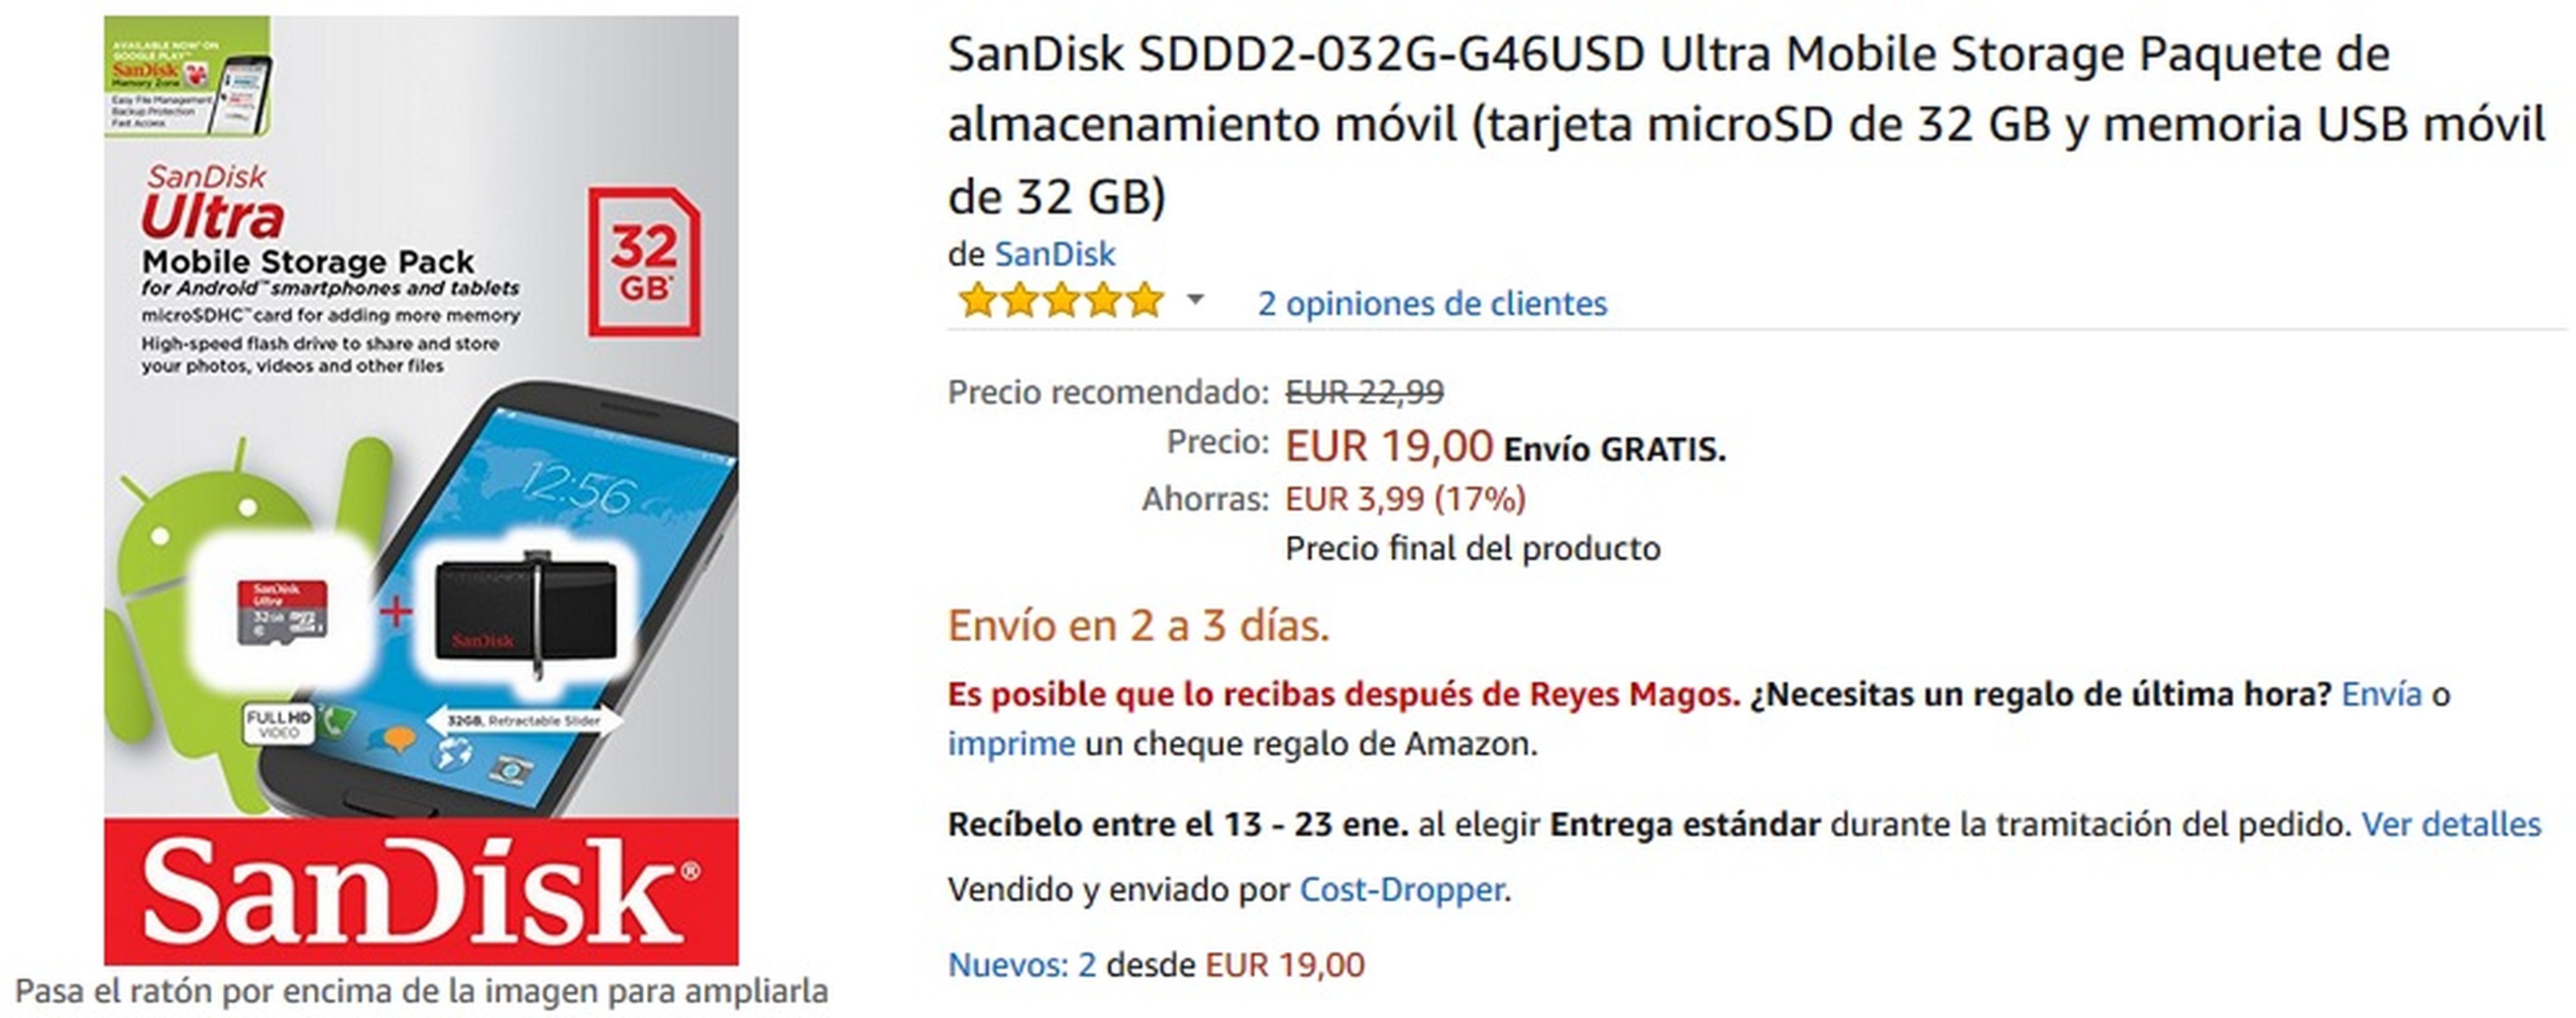 Tarjeta MicroSD SanDisk de 32GB